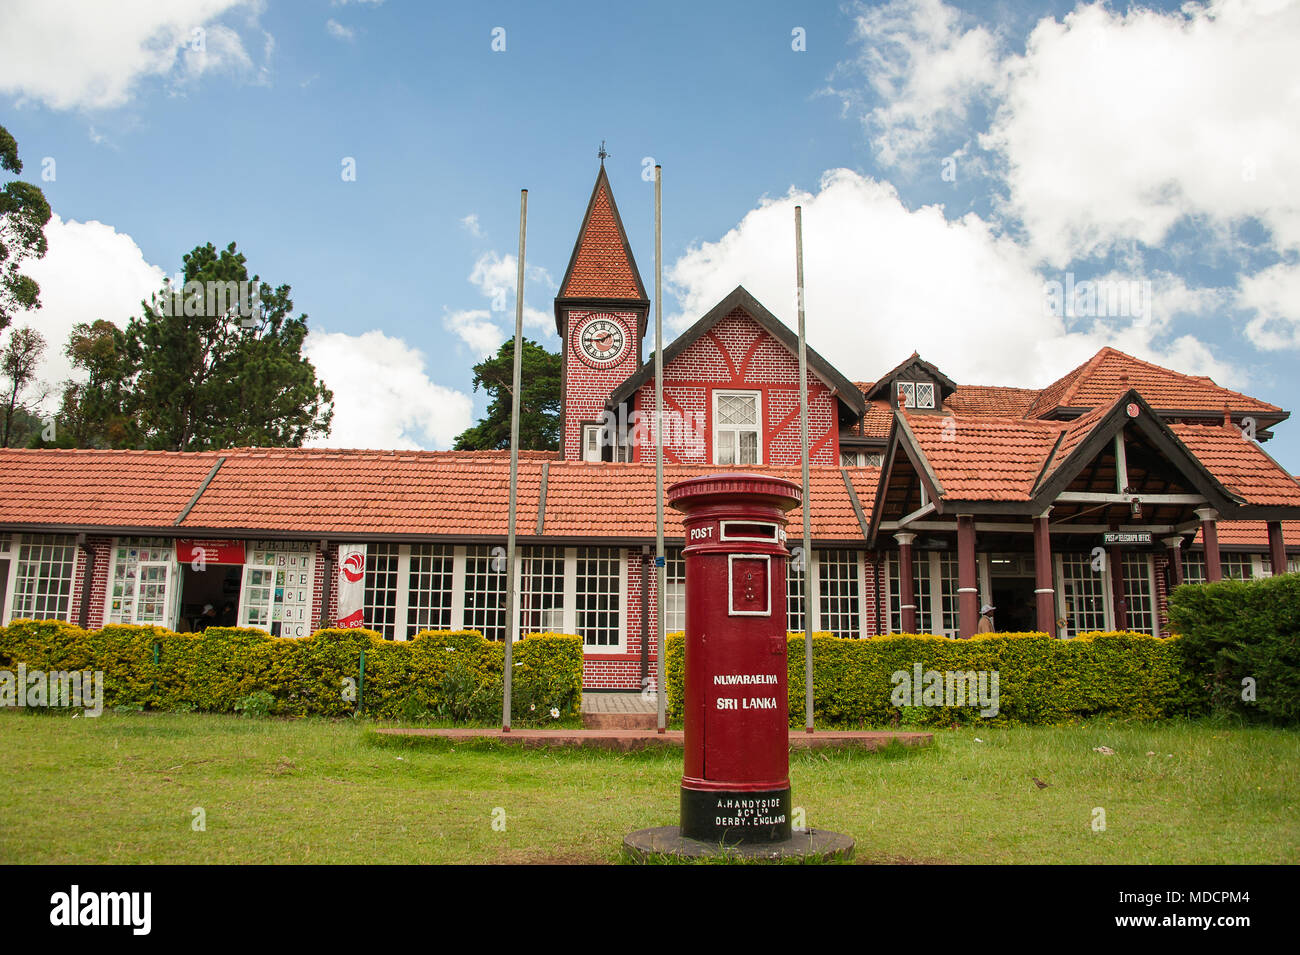 Bureau de poste style revivaliste Tudor à Nuwara Eliya, surnommé 'Little England'. Façade en briques rouges, des toits de tuiles rouges et joli réveil spire avec ciel bleu Banque D'Images